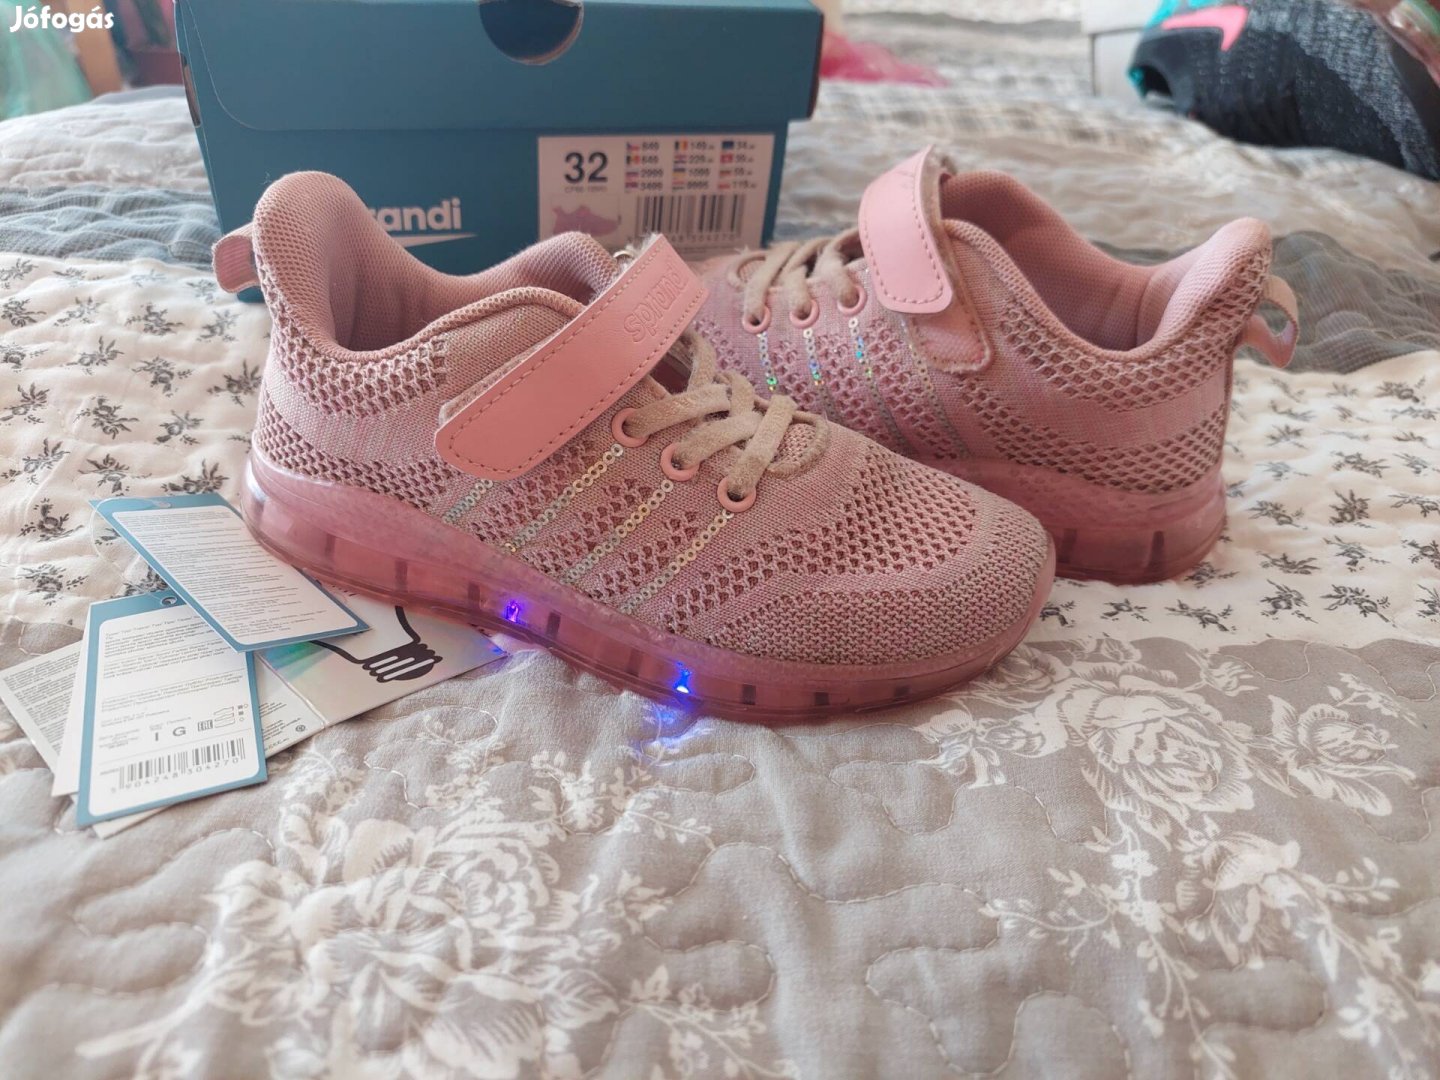 32-es villogós rózsaszín cipő